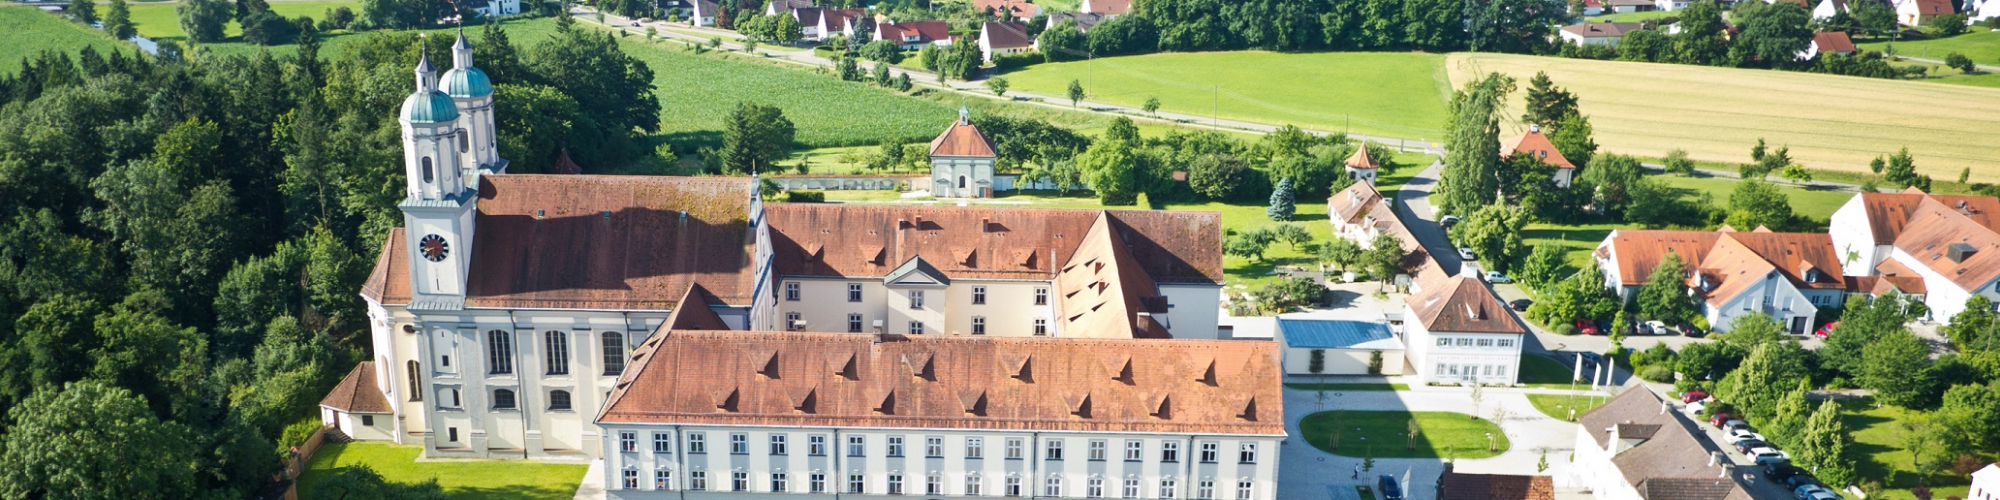 Kloster Holzen Hotel GmbH